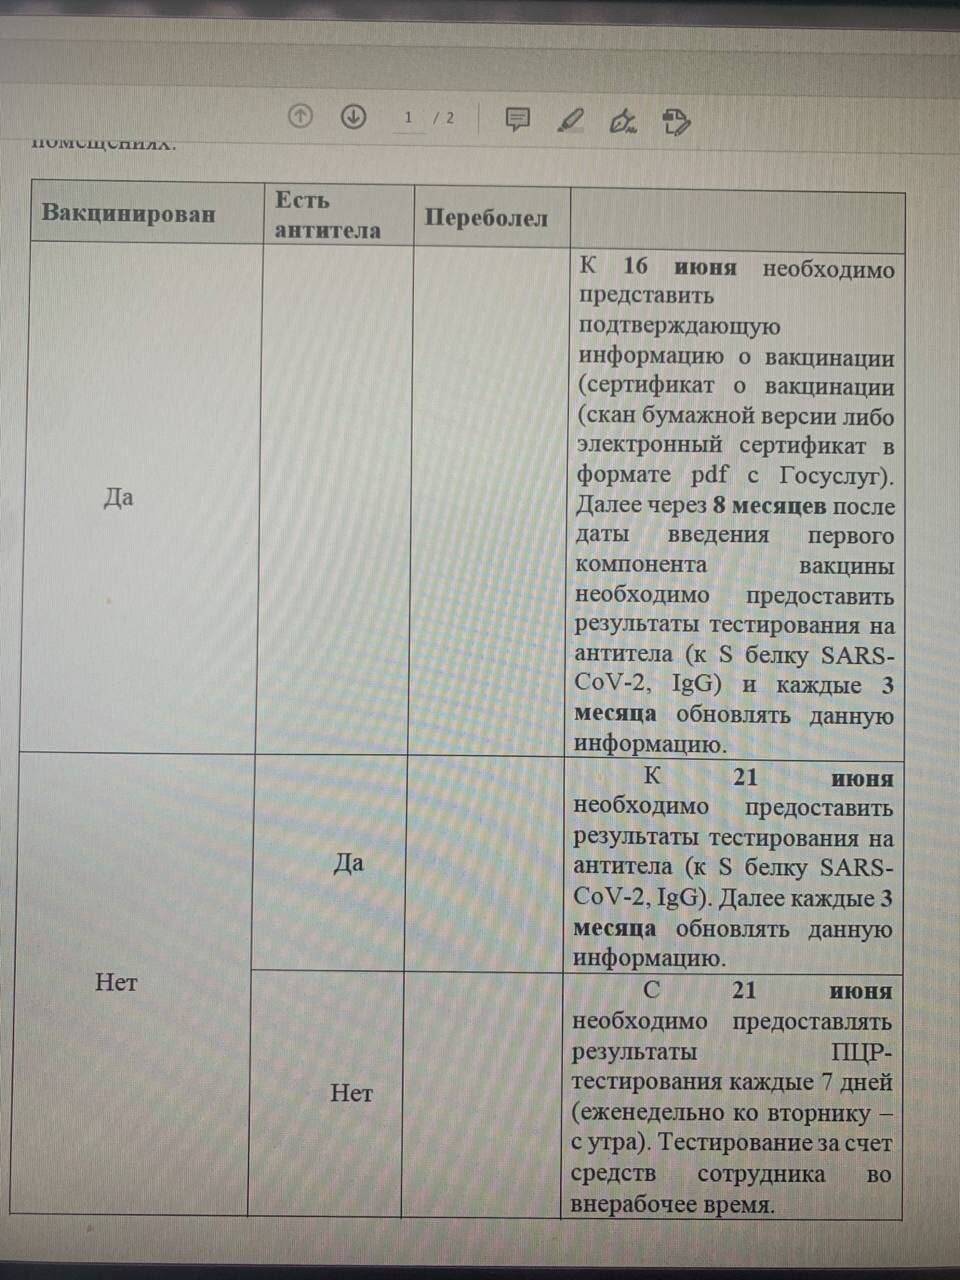 Вслед за Москвой подобные требования к вакцинации ввели 16 июня Московская и Кемеровская , а 17-го – Сахалинская области.